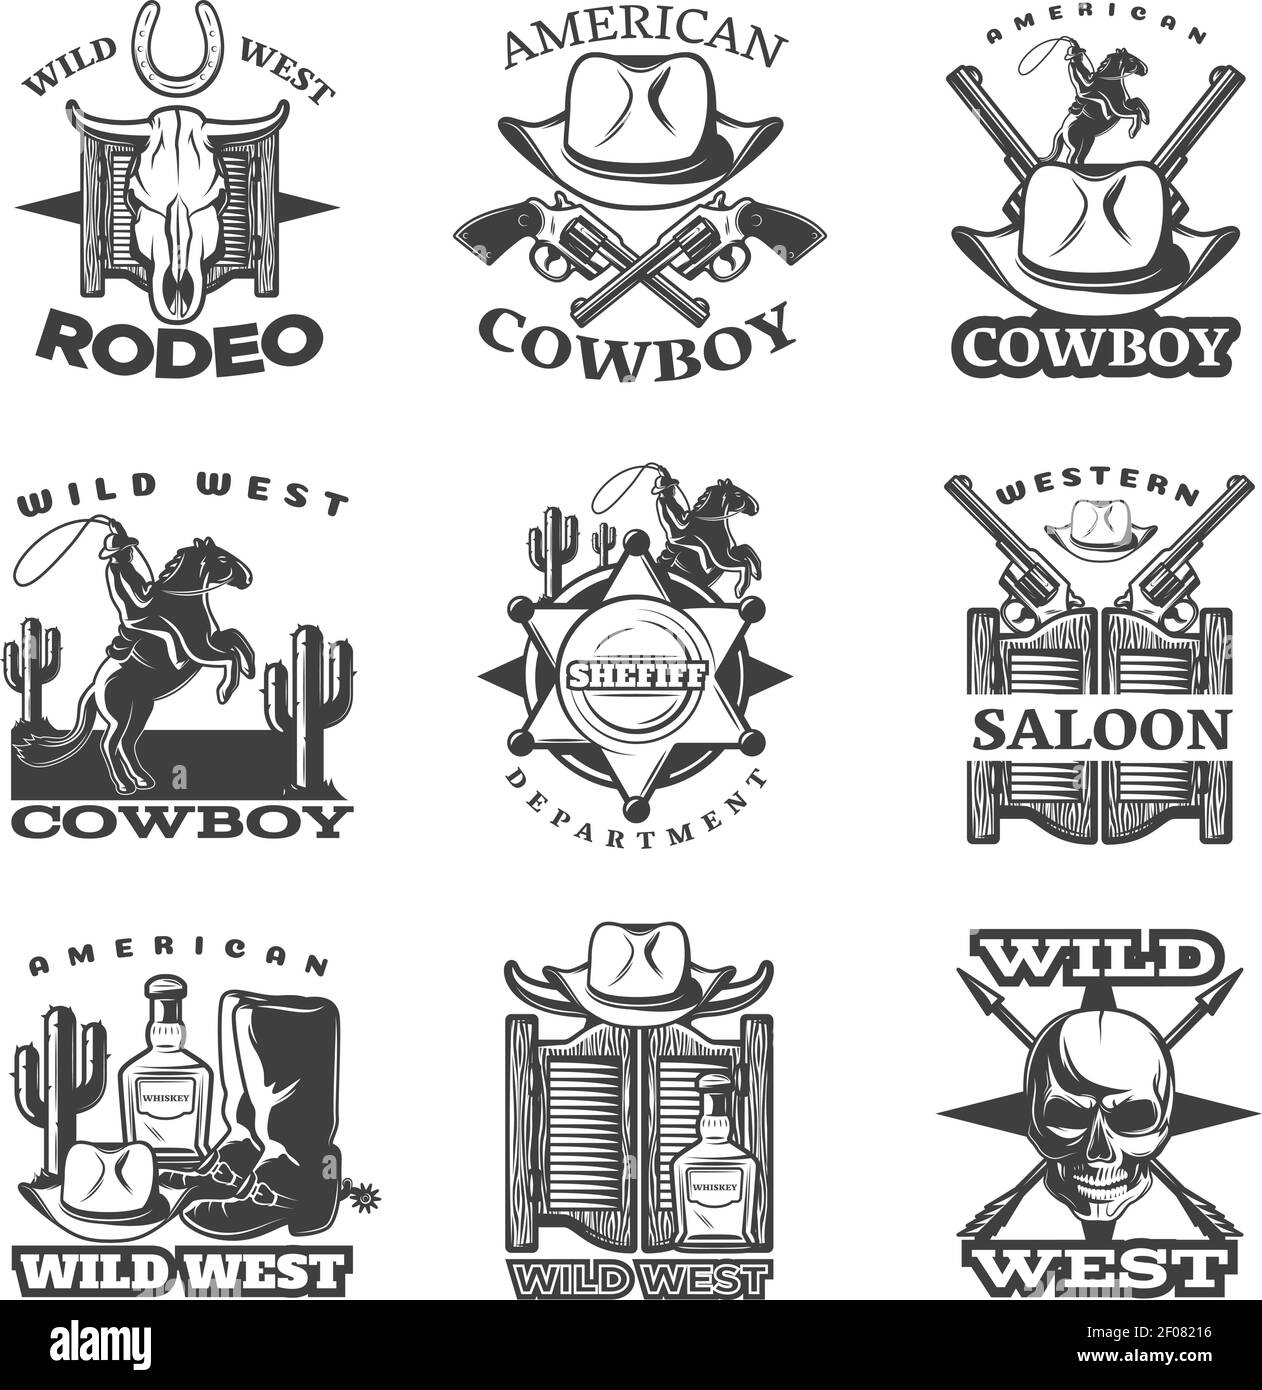 Emblème noir de l'ouest sauvage avec rodéo américain sauvage de l'ouest description de la berline occidentale de cowboy illustration vectorielle Illustration de Vecteur